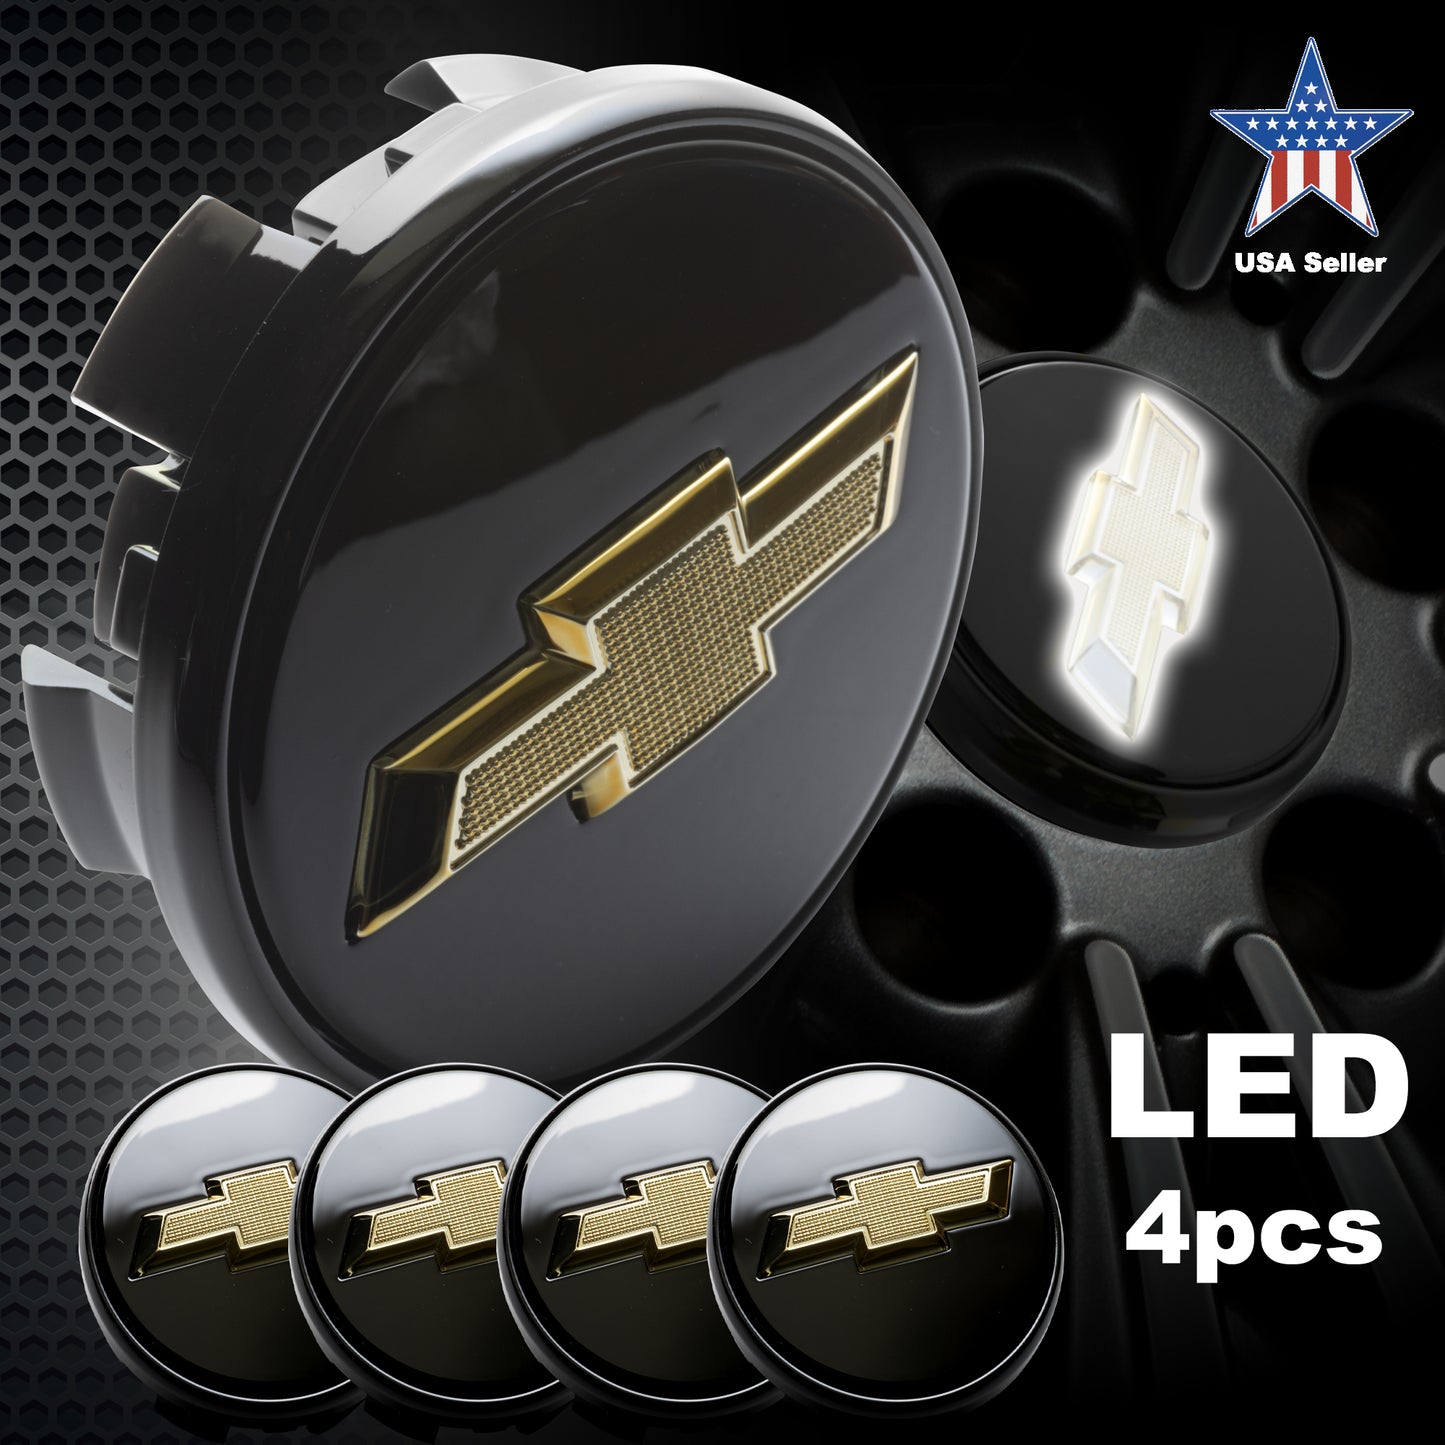 4Pcs Chevy LED Lighted Wheel Center Hub Cap 3.25” 83mm for 18” 20” 22” Wheels